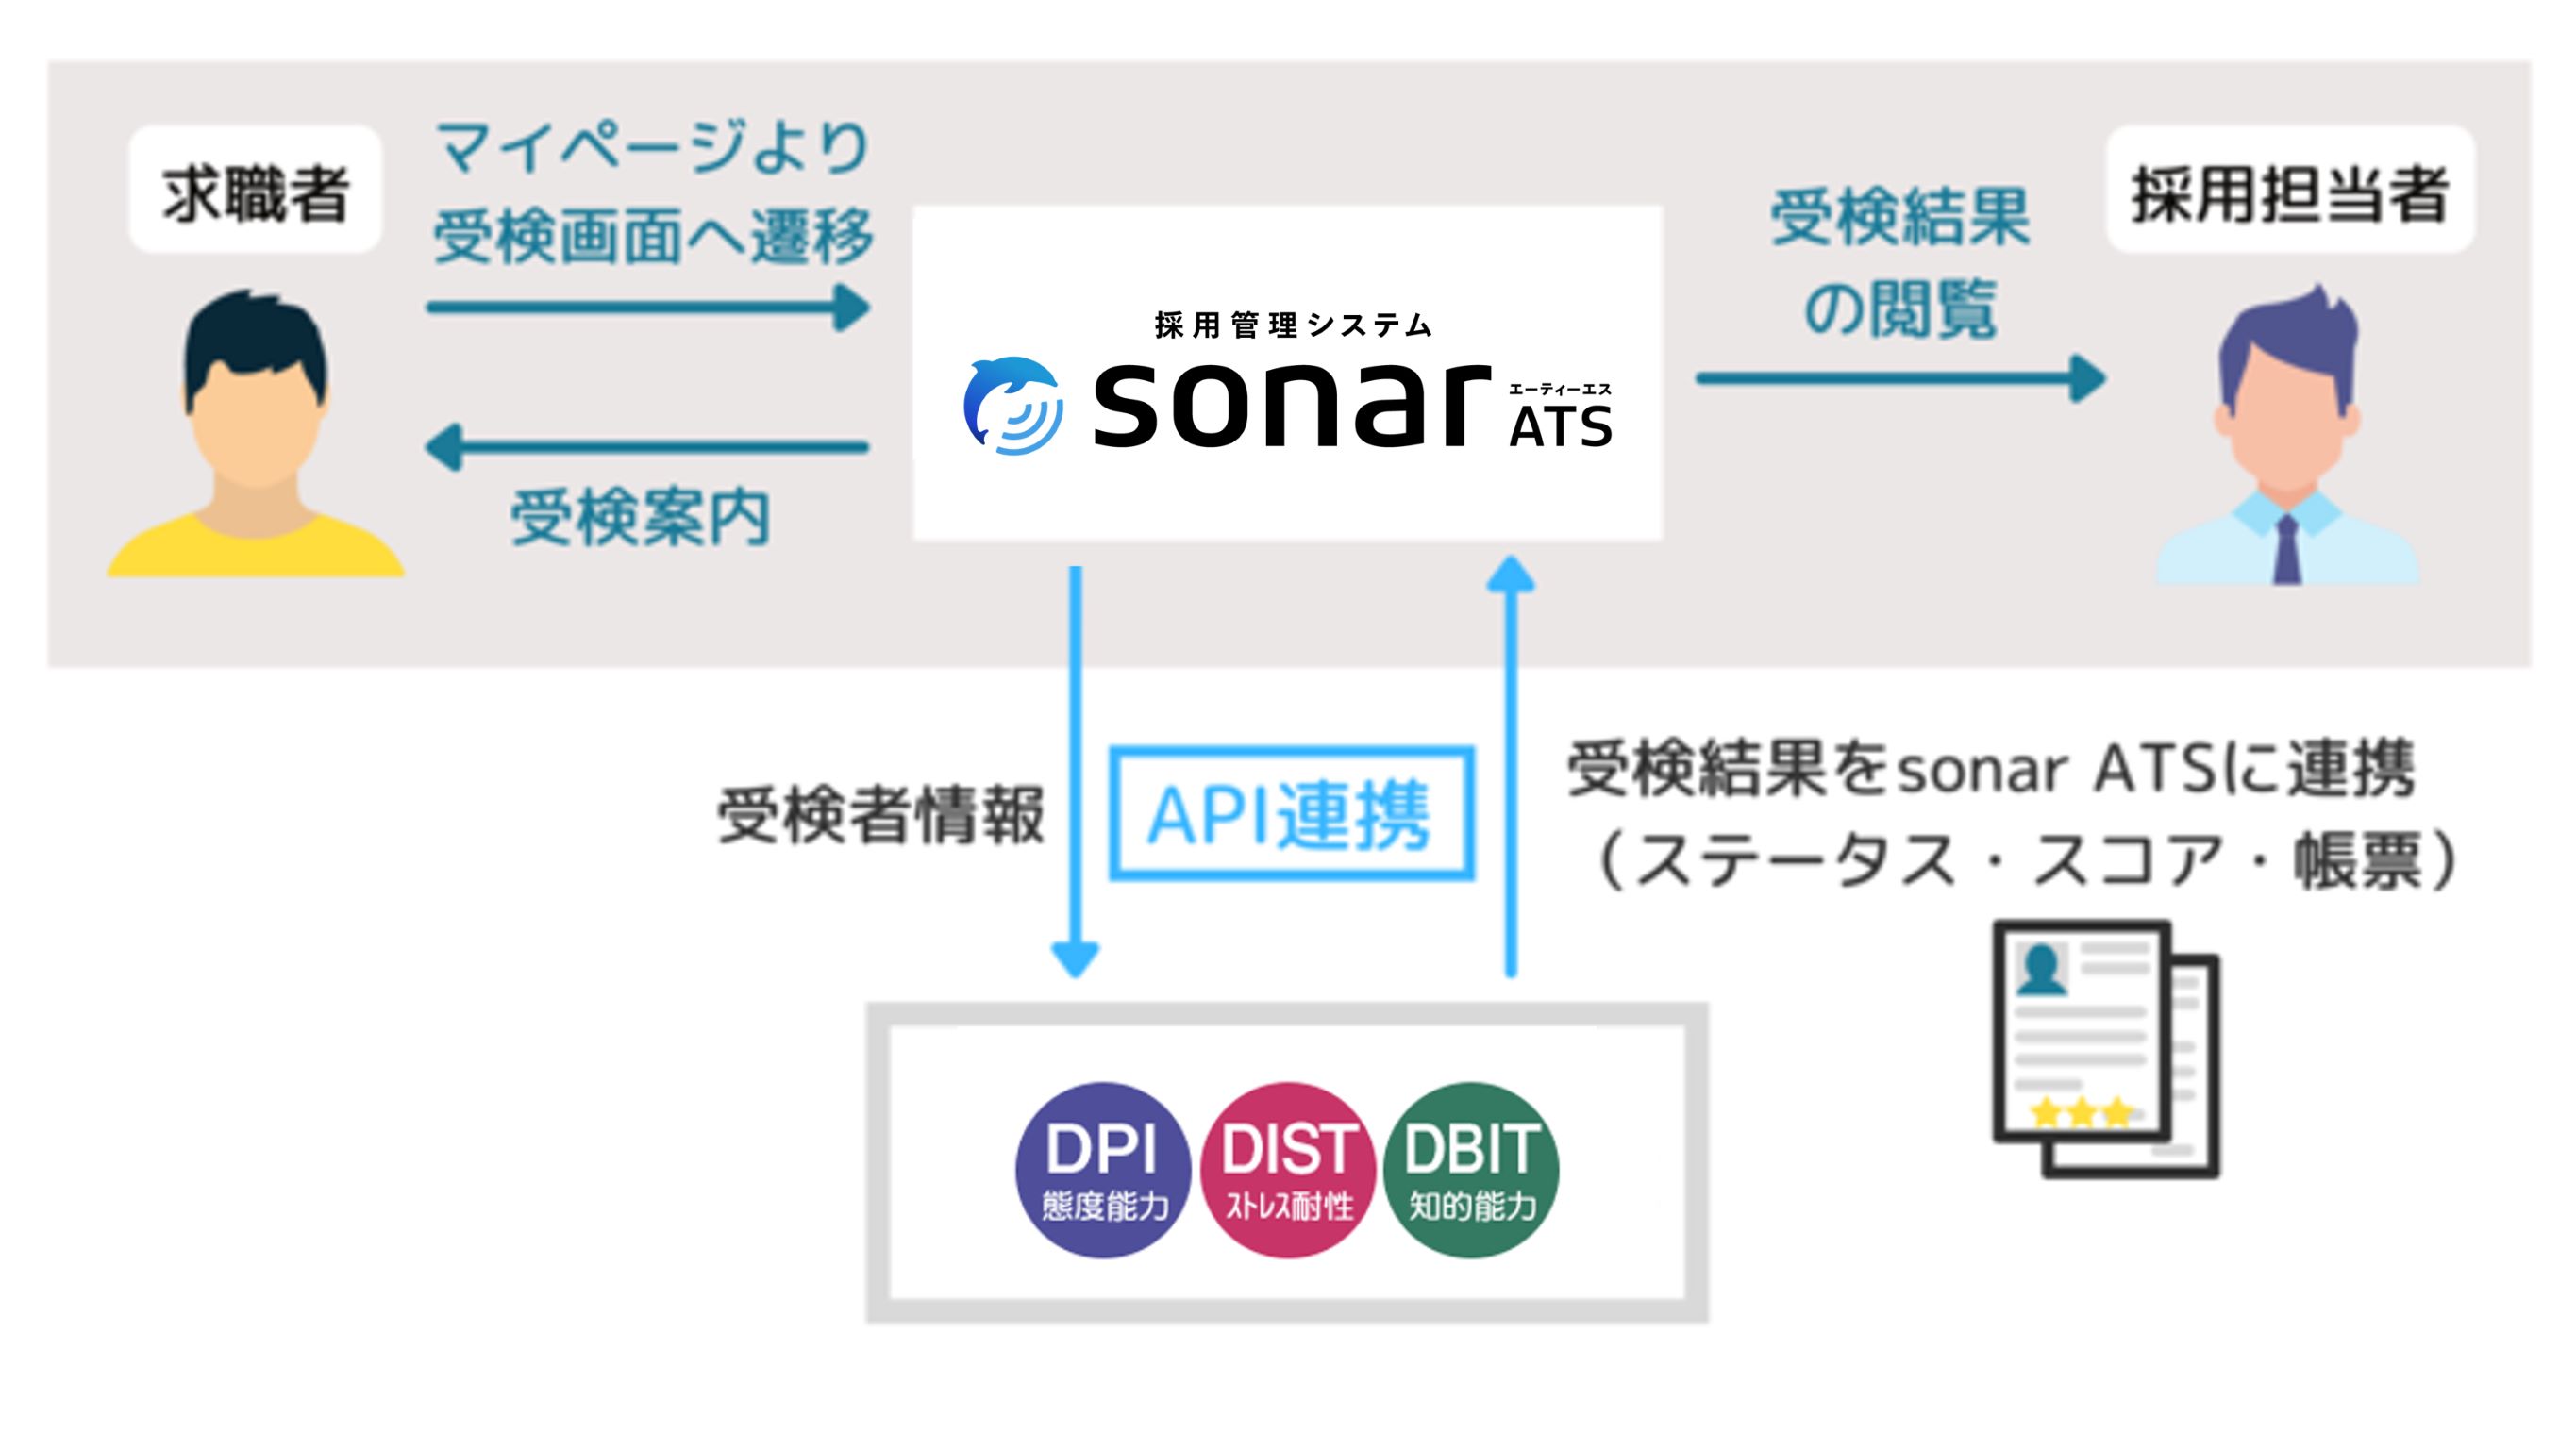 採用管理システム「sonar ATS」、適性検査「DPI・DIST・DBIT」とAPI連携を開始